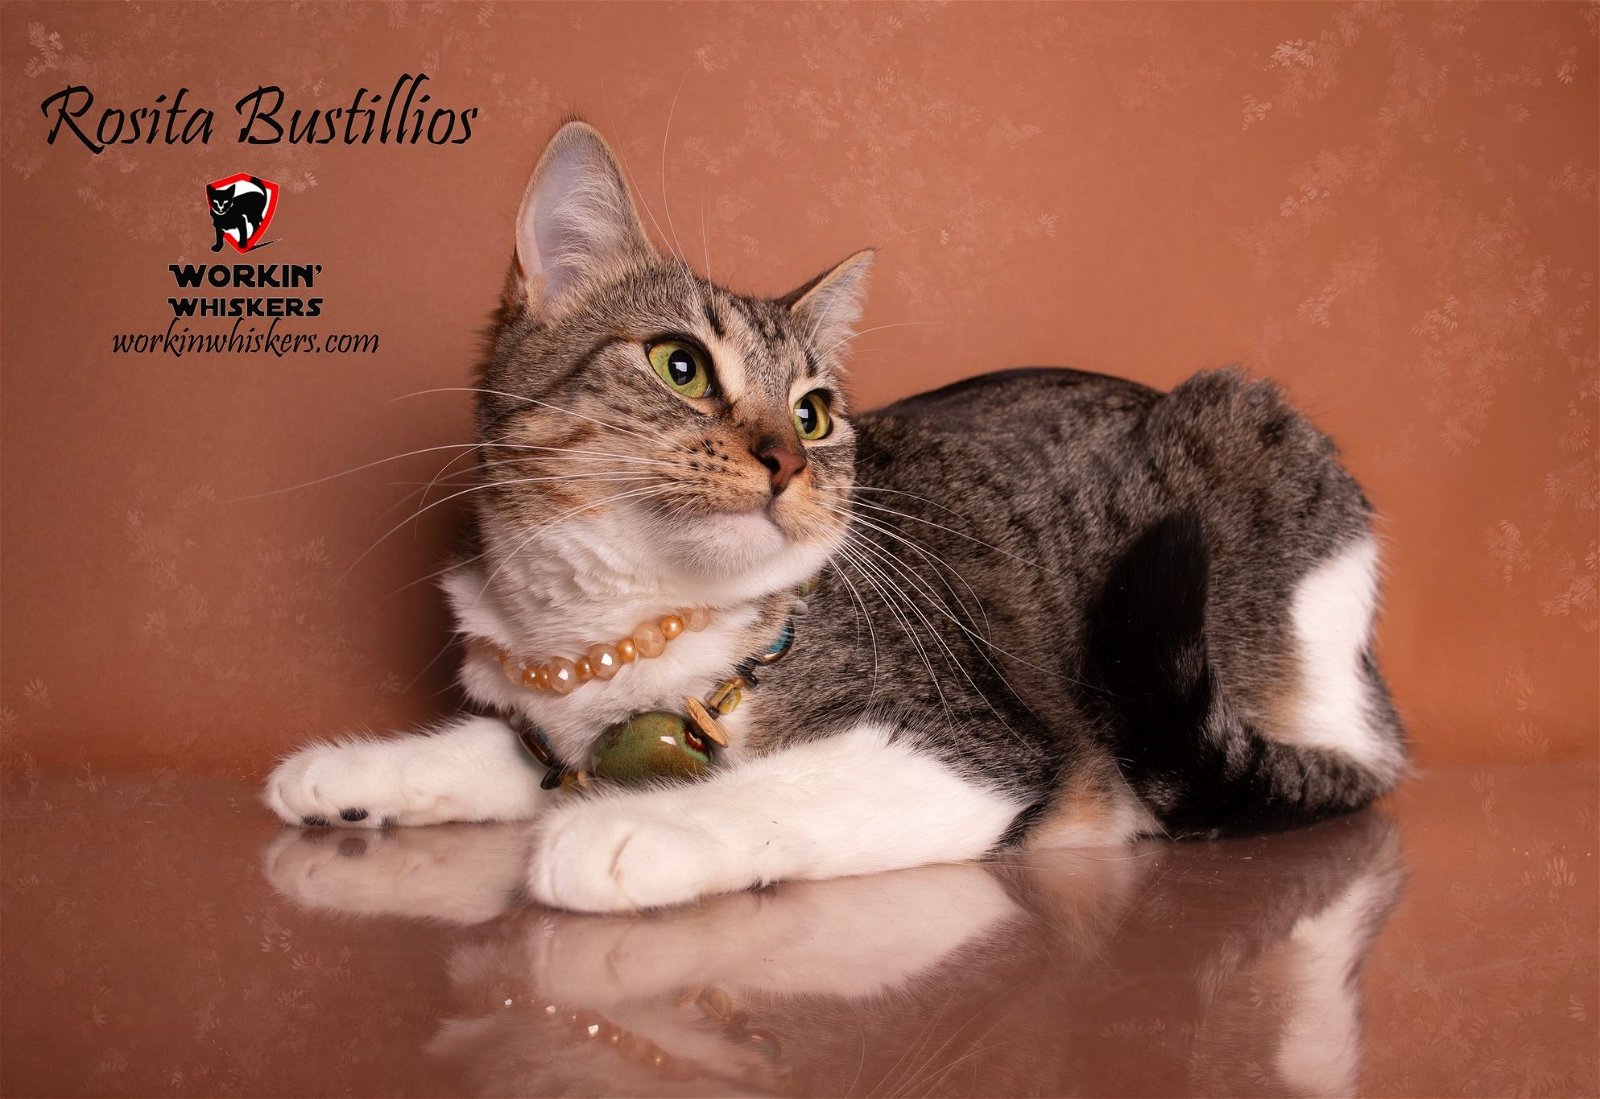 adoptable Cat in Hemet, CA named ROSITA BUSTILLOS